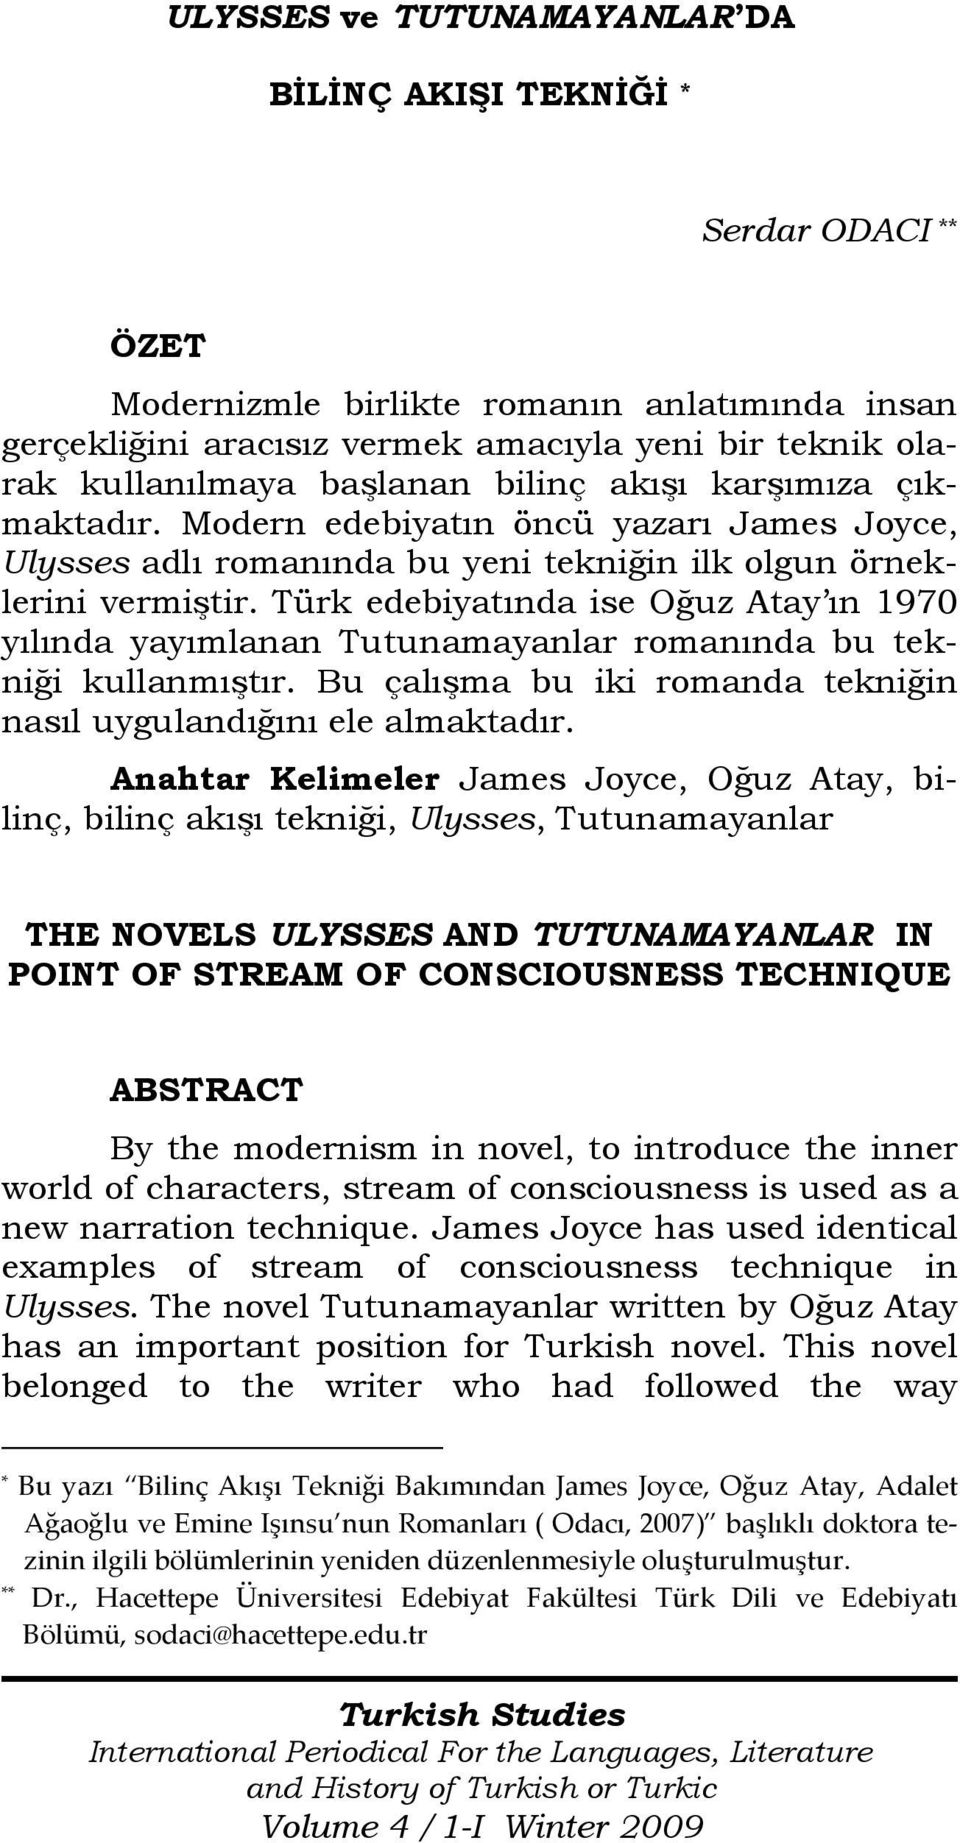 Türk edebiyatında ise Oğuz Atay ın 1970 yılında yayımlanan Tutunamayanlar romanında bu tekniği kullanmıştır. Bu çalışma bu iki romanda tekniğin nasıl uygulandığını ele almaktadır.